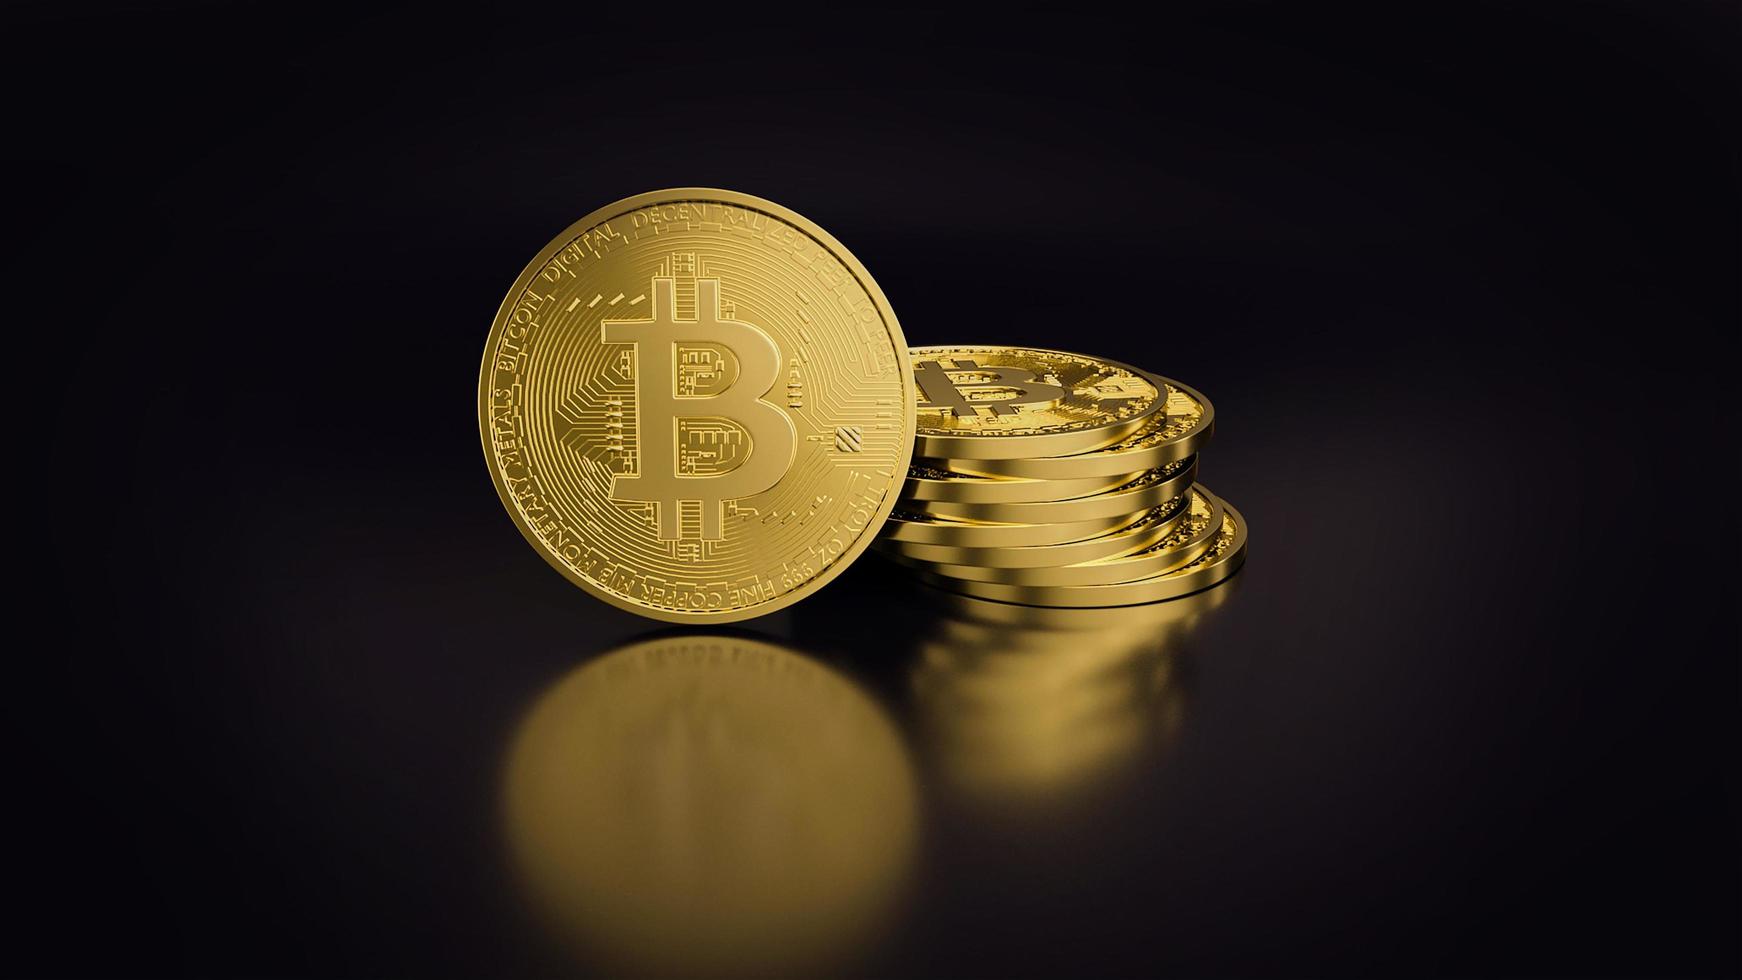 pila de moneda digital bitcoin. cryptocurrency btc el nuevo dinero virtual cerrar render 3d de bitcoins dorados sobre fondo negro foto